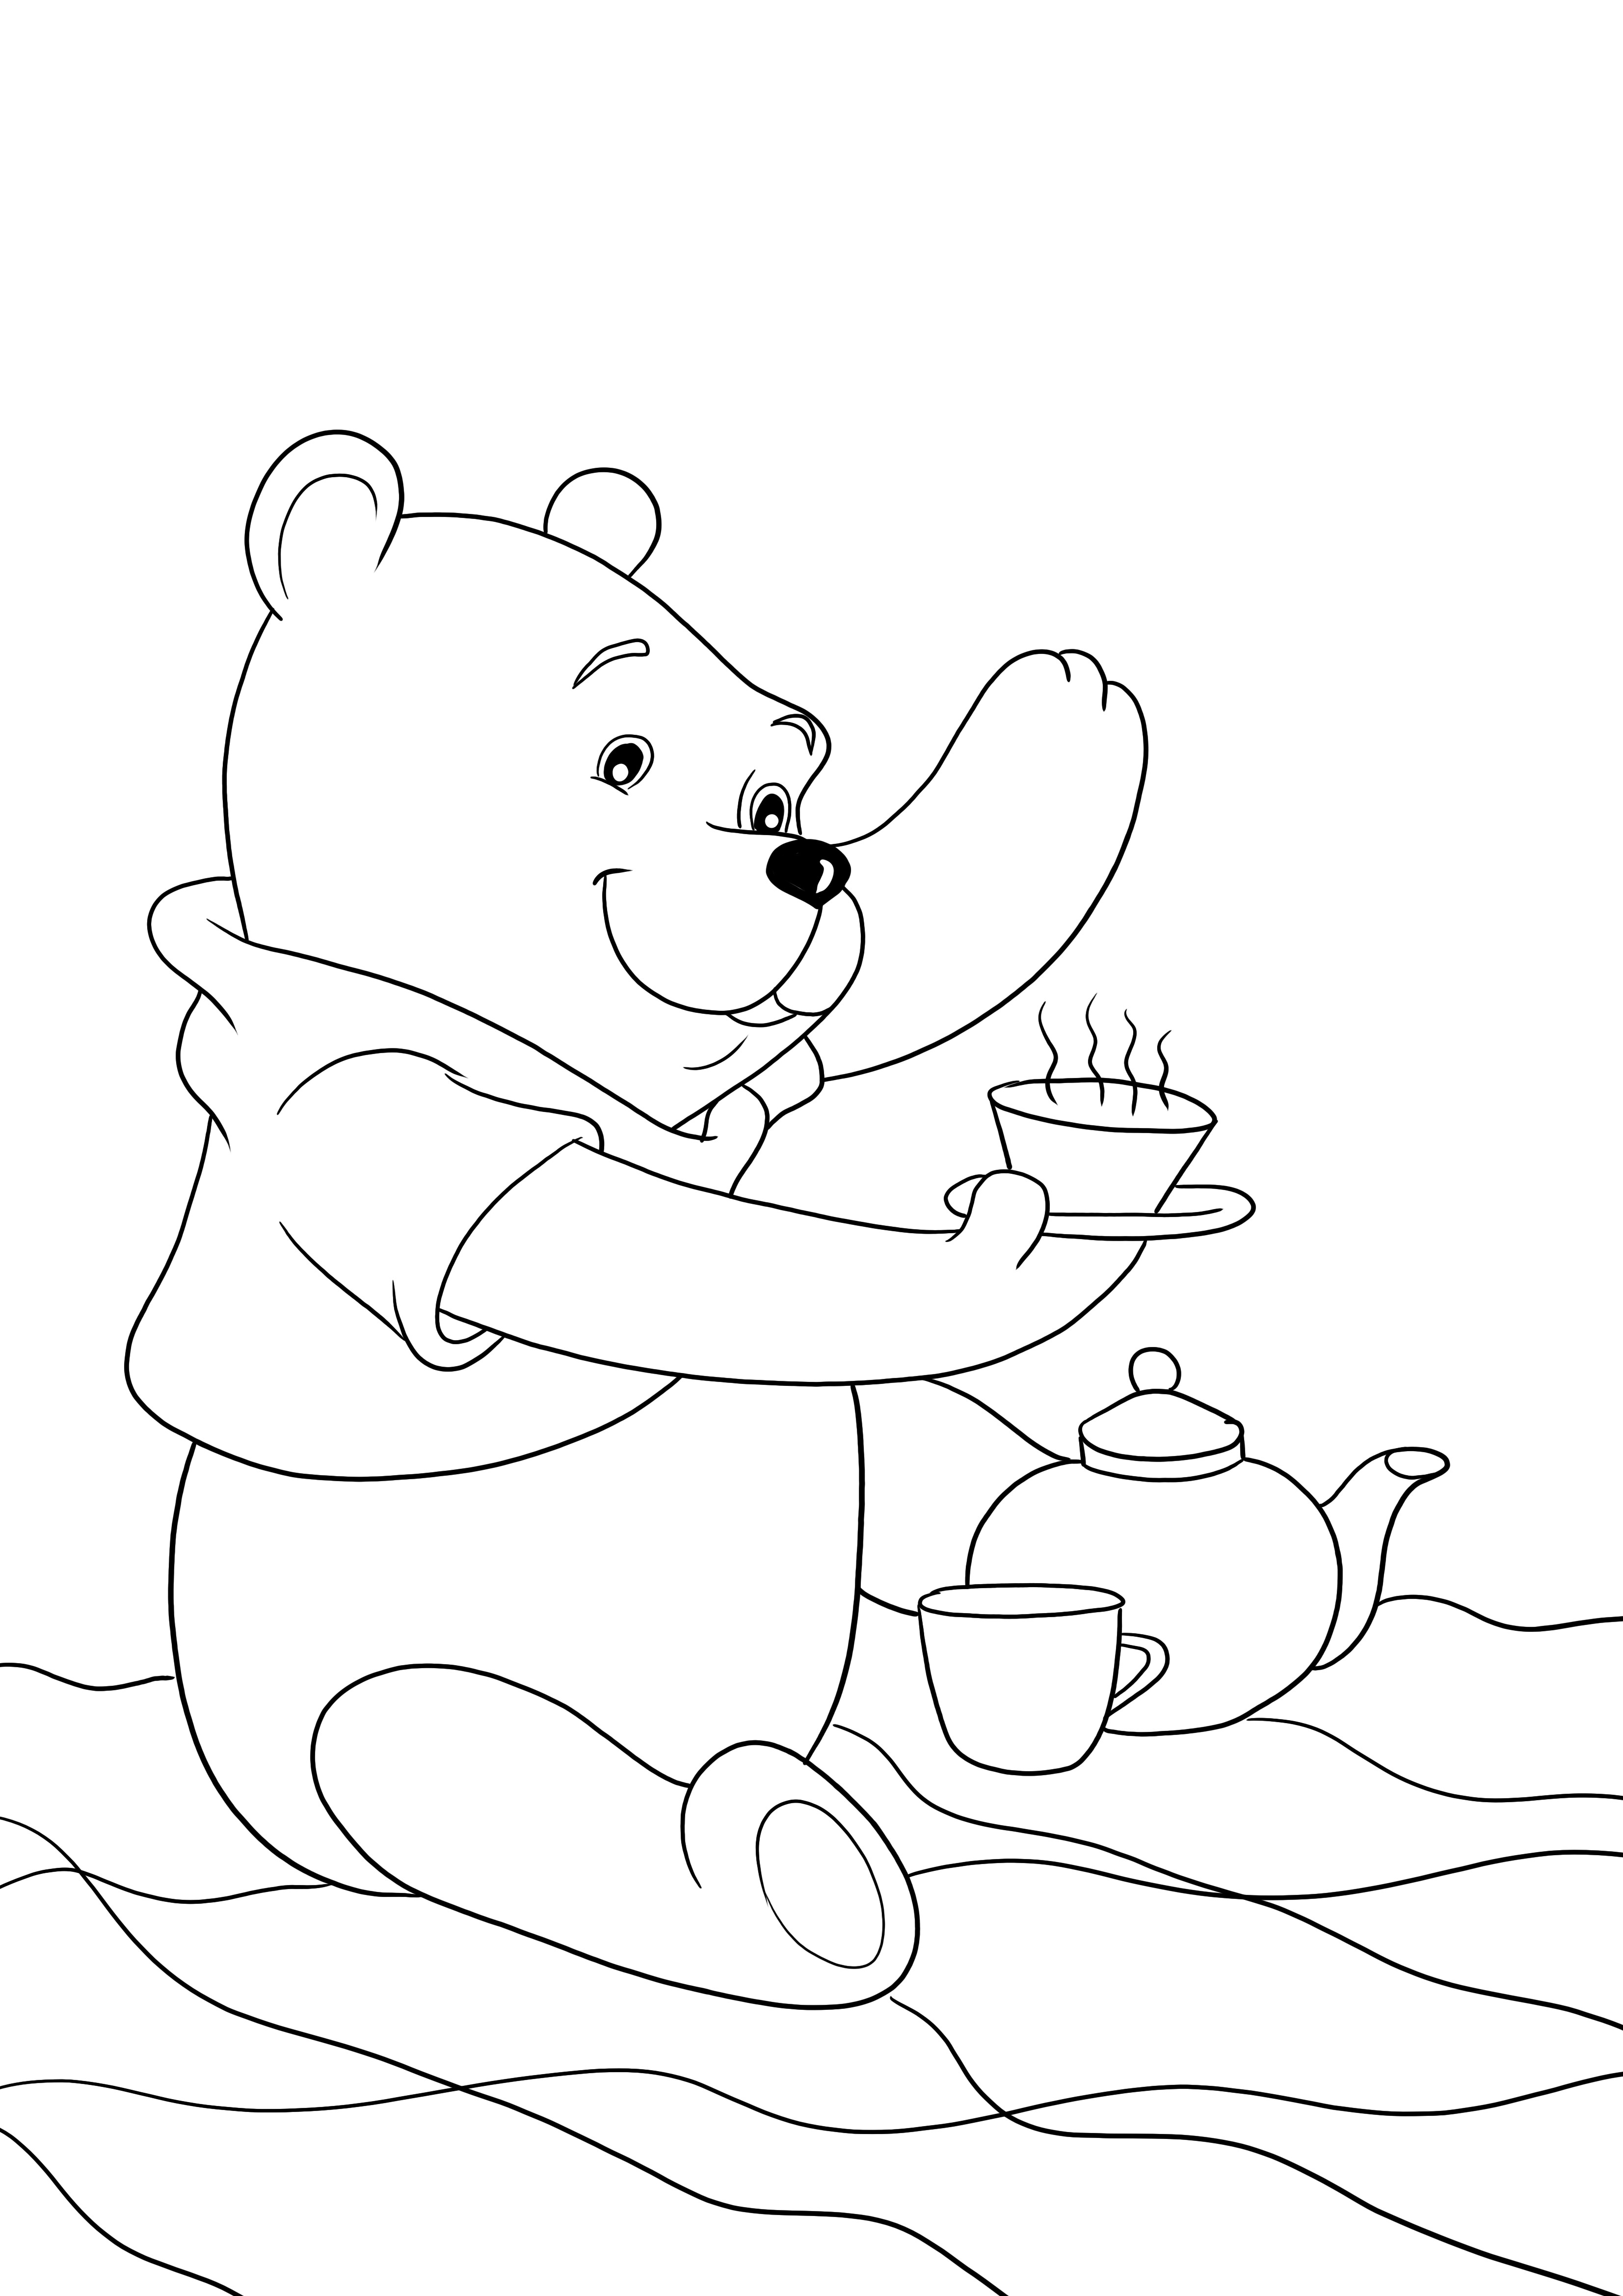 Winnie bea ceai pagina de descărcare gratuită pentru colorat pentru copii